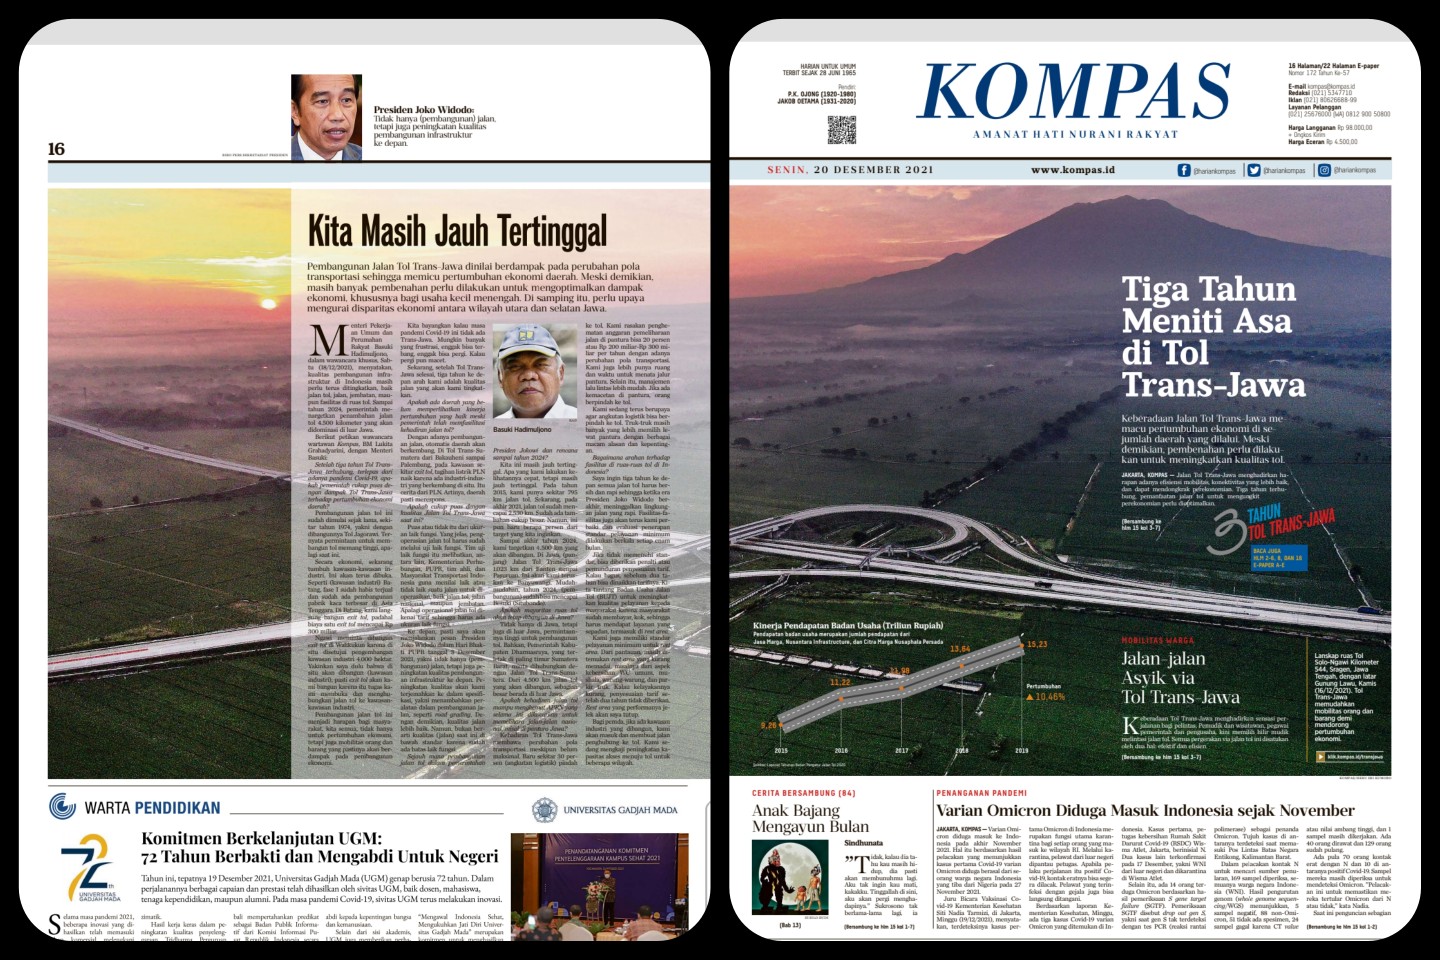 Liputan khusus Kompas tentang Trans-Jawa Jokowi 